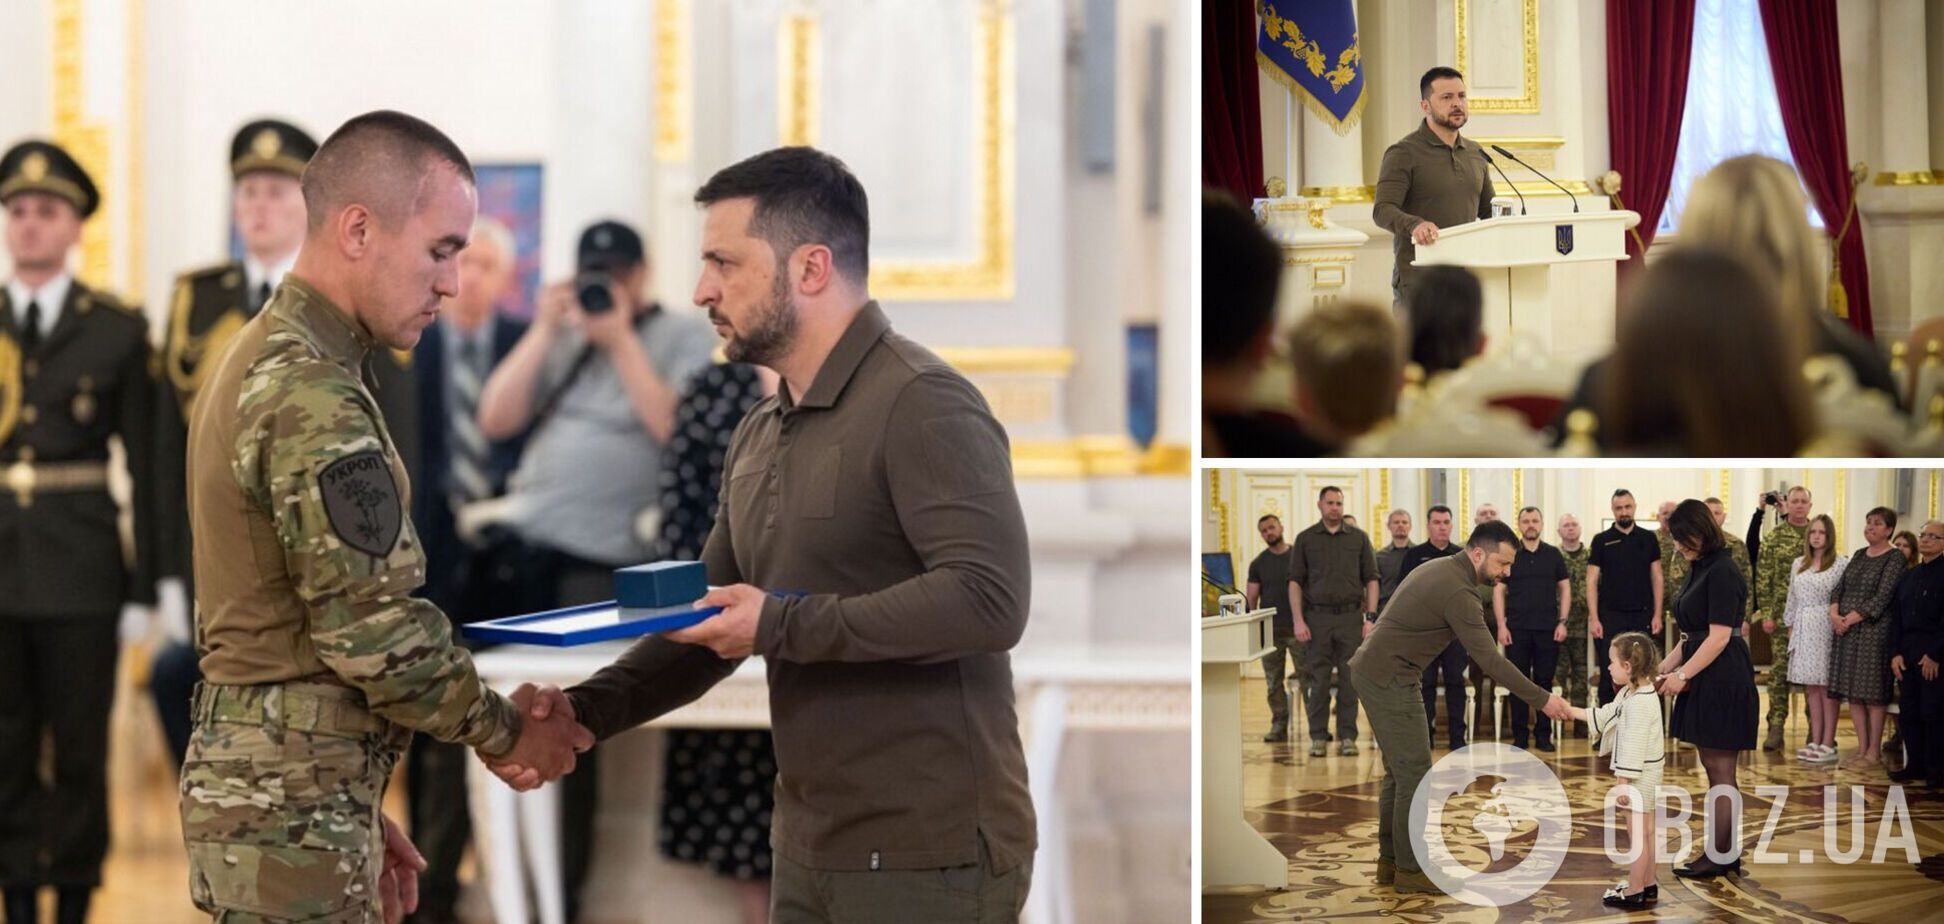 'Працюють заради нашої держави': Зеленський відзначив державними нагородами військовослужбовців і військових кореспондентів. Фото й відео